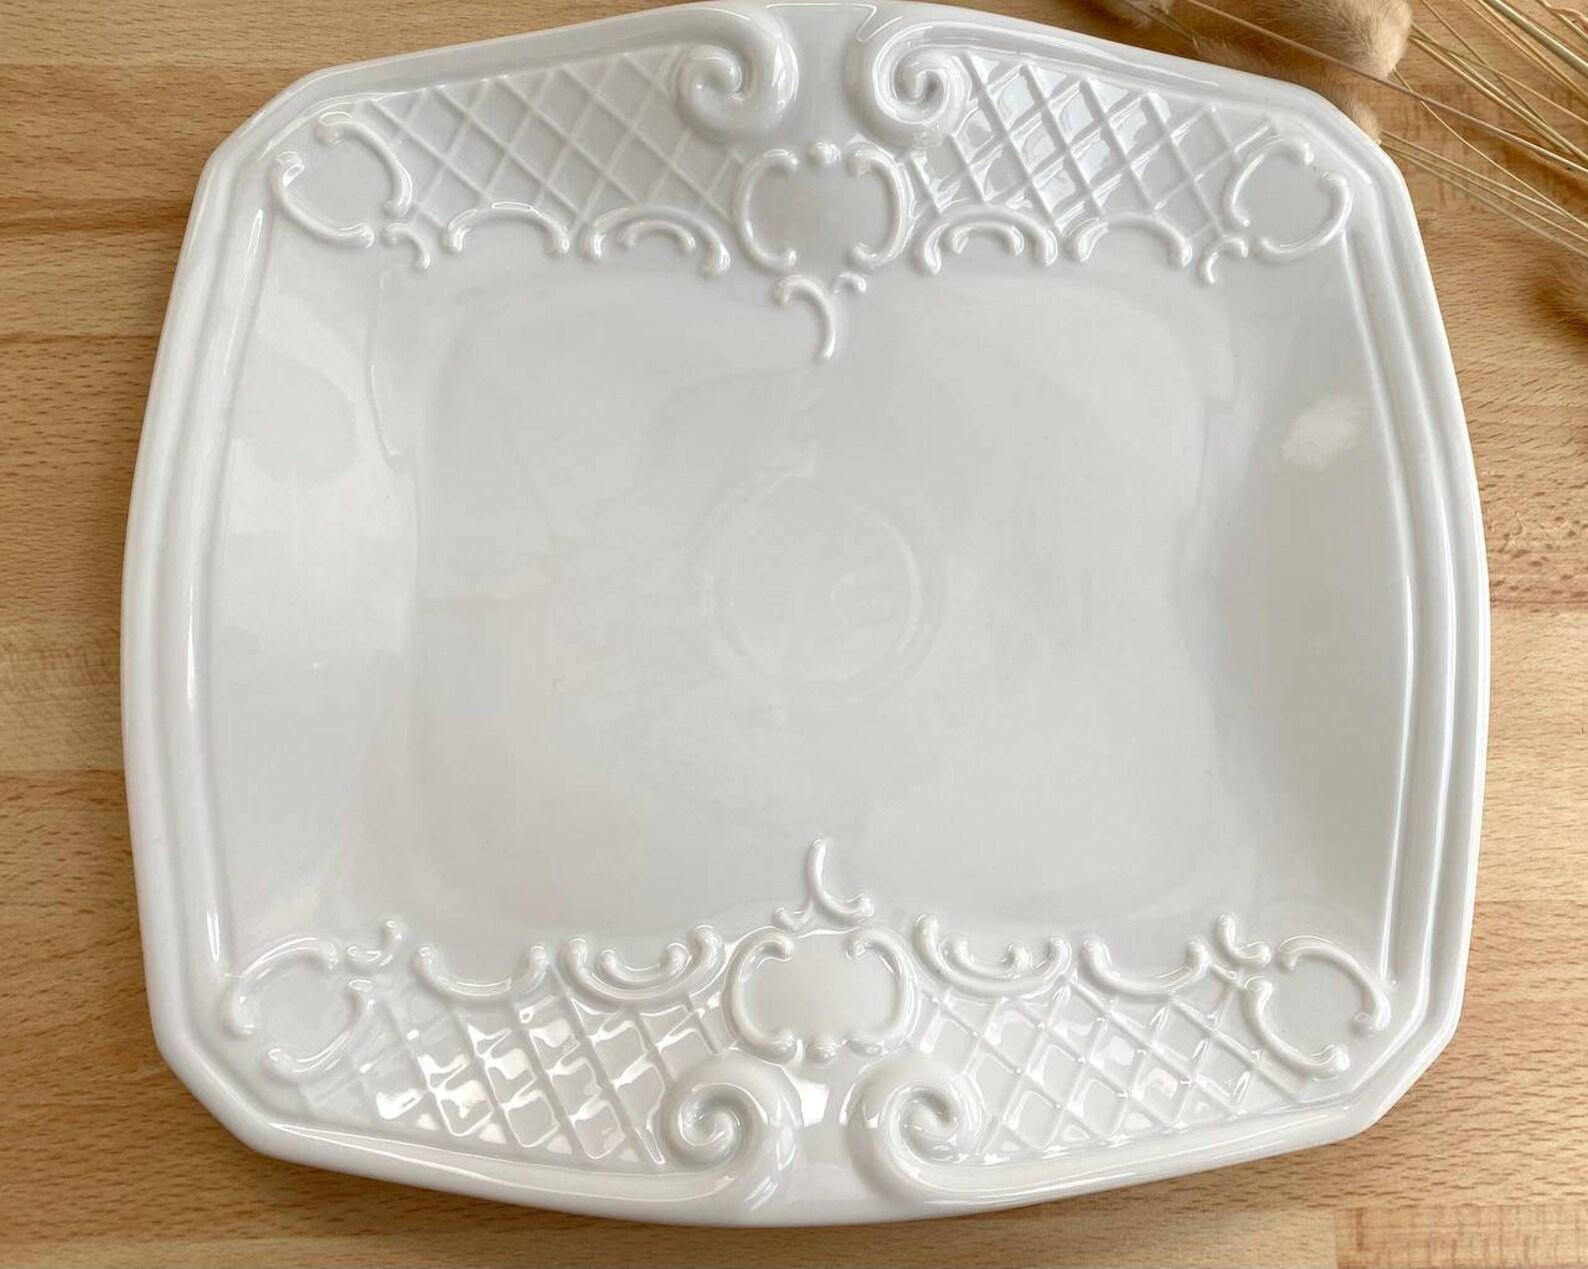 Le plat de service rectangulaire Bavière Allemagne de l'Ouest est fabriqué en porcelaine de haute qualité avec une glaçure blanche. 

Le produit présente un motif mignon et délicat sous la forme d'un ornement tridimensionnel. Une telle assiette